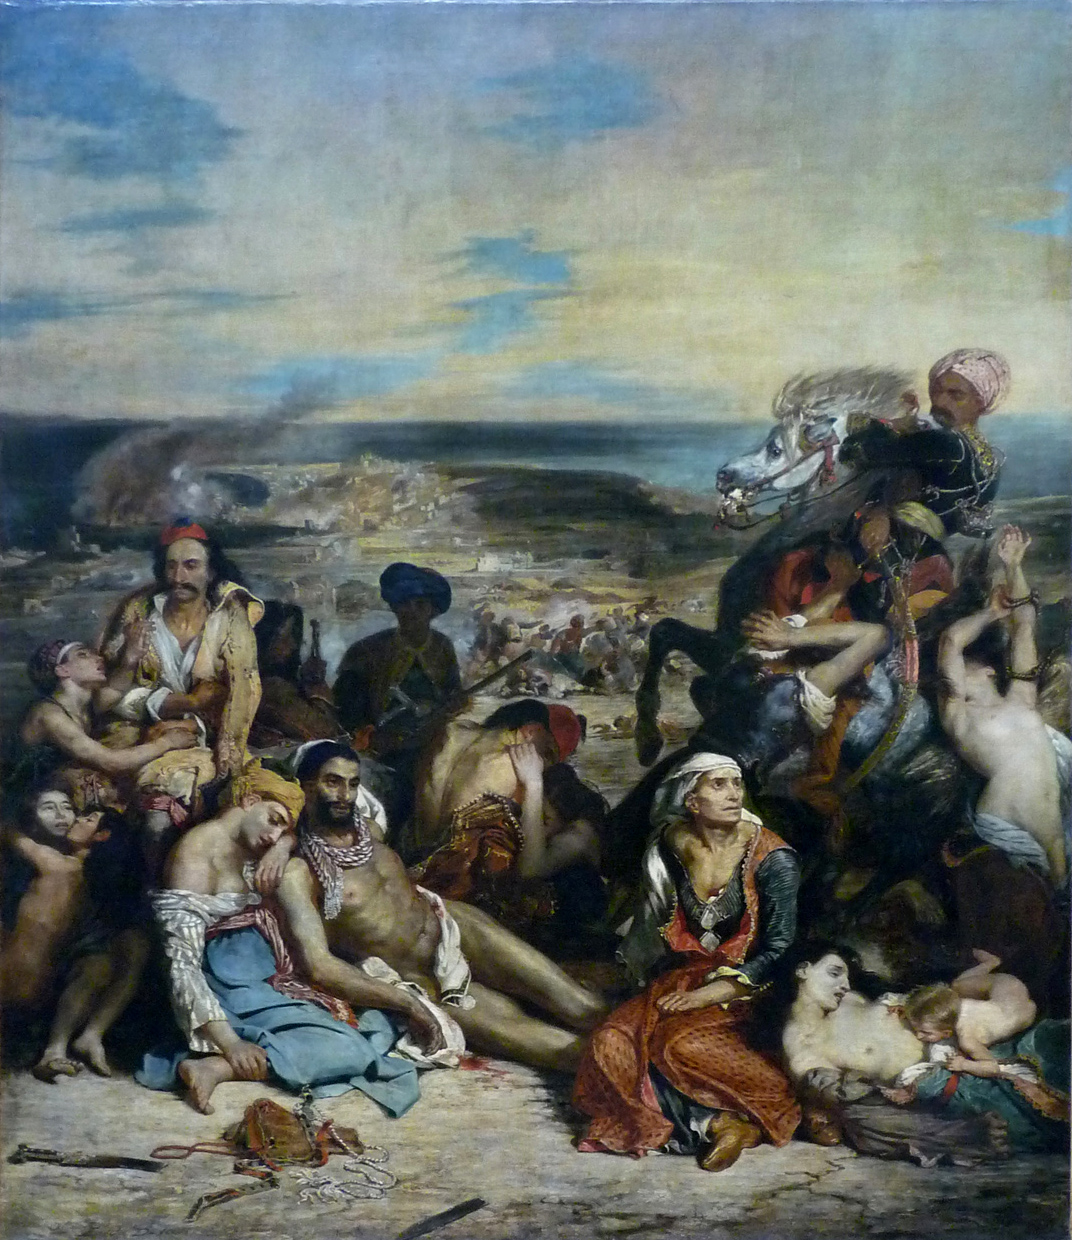 Eugène Delacroix, Massacre at Chios, 1824, oil on canvas, 419 × 354 cm (Musée du Louvre, Paris)